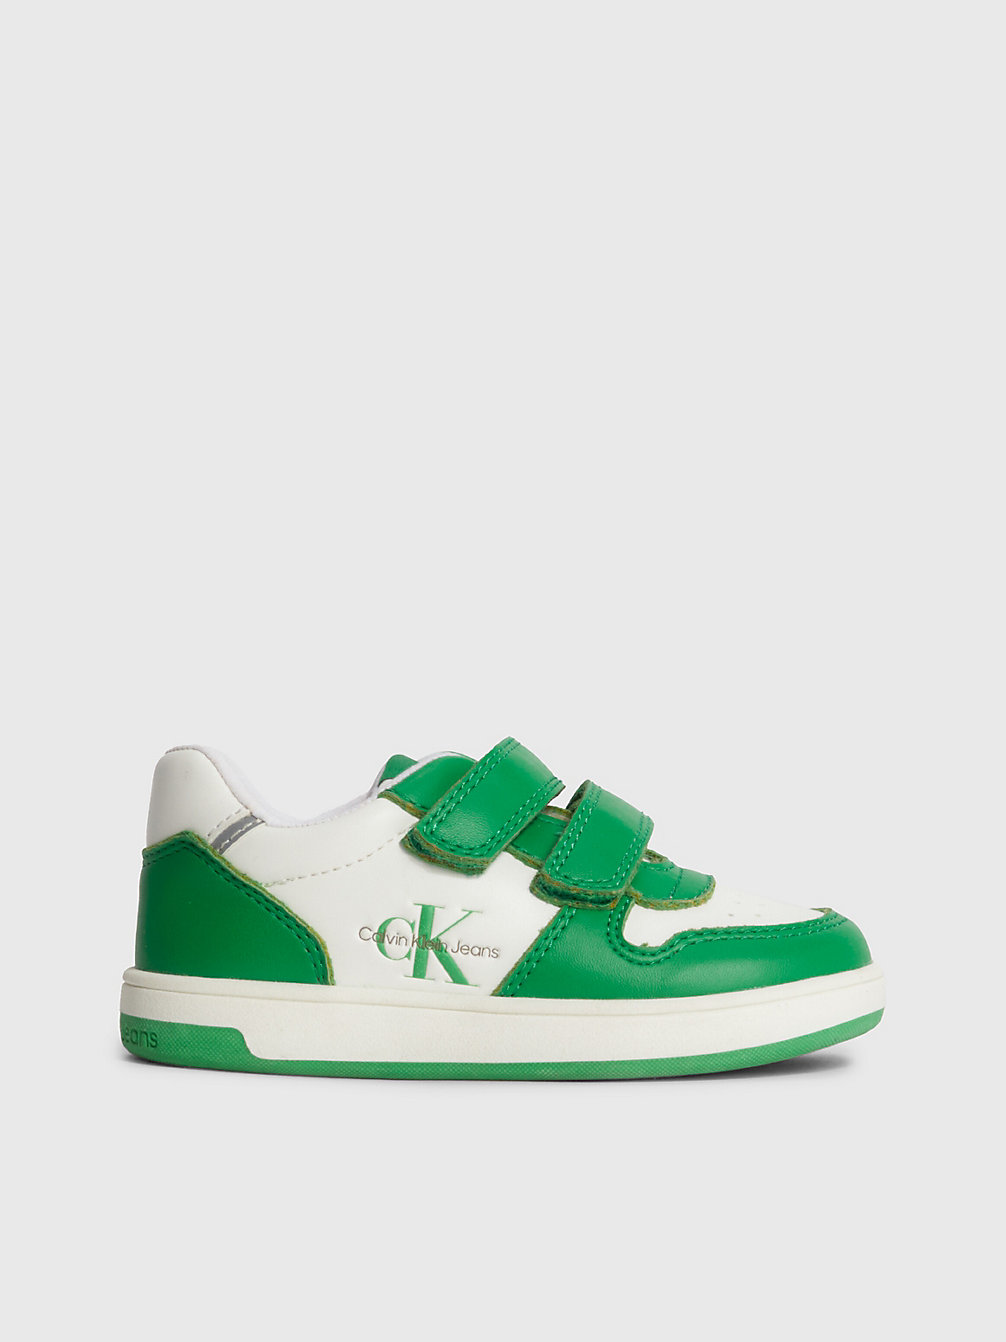 GREEN / WHITE > Sneakers Mit Klettverschluss Für Kleinkinder Und Kinder > undefined kids unisex - Calvin Klein